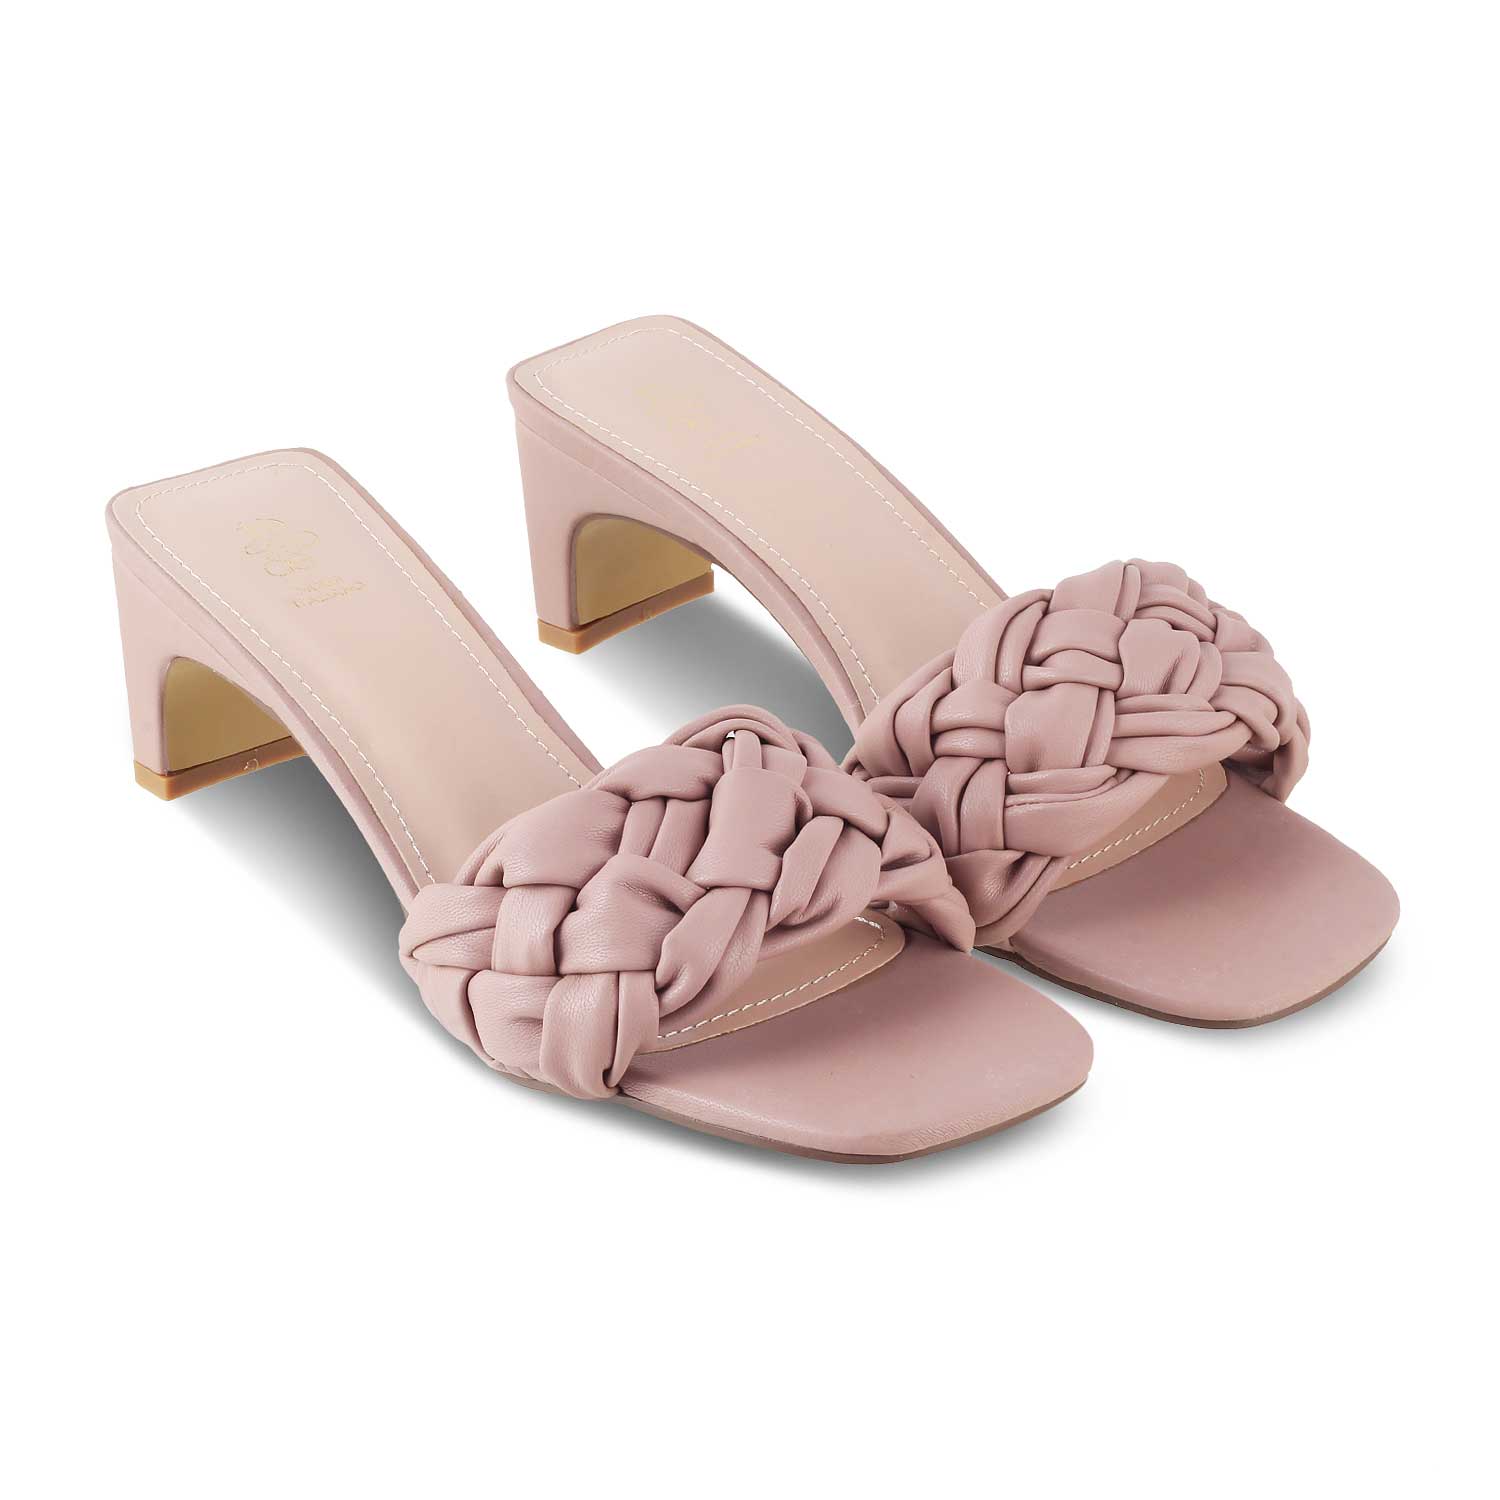 The Pragues Pink Women's Dress Heel Sandals Tresmode - Tresmode